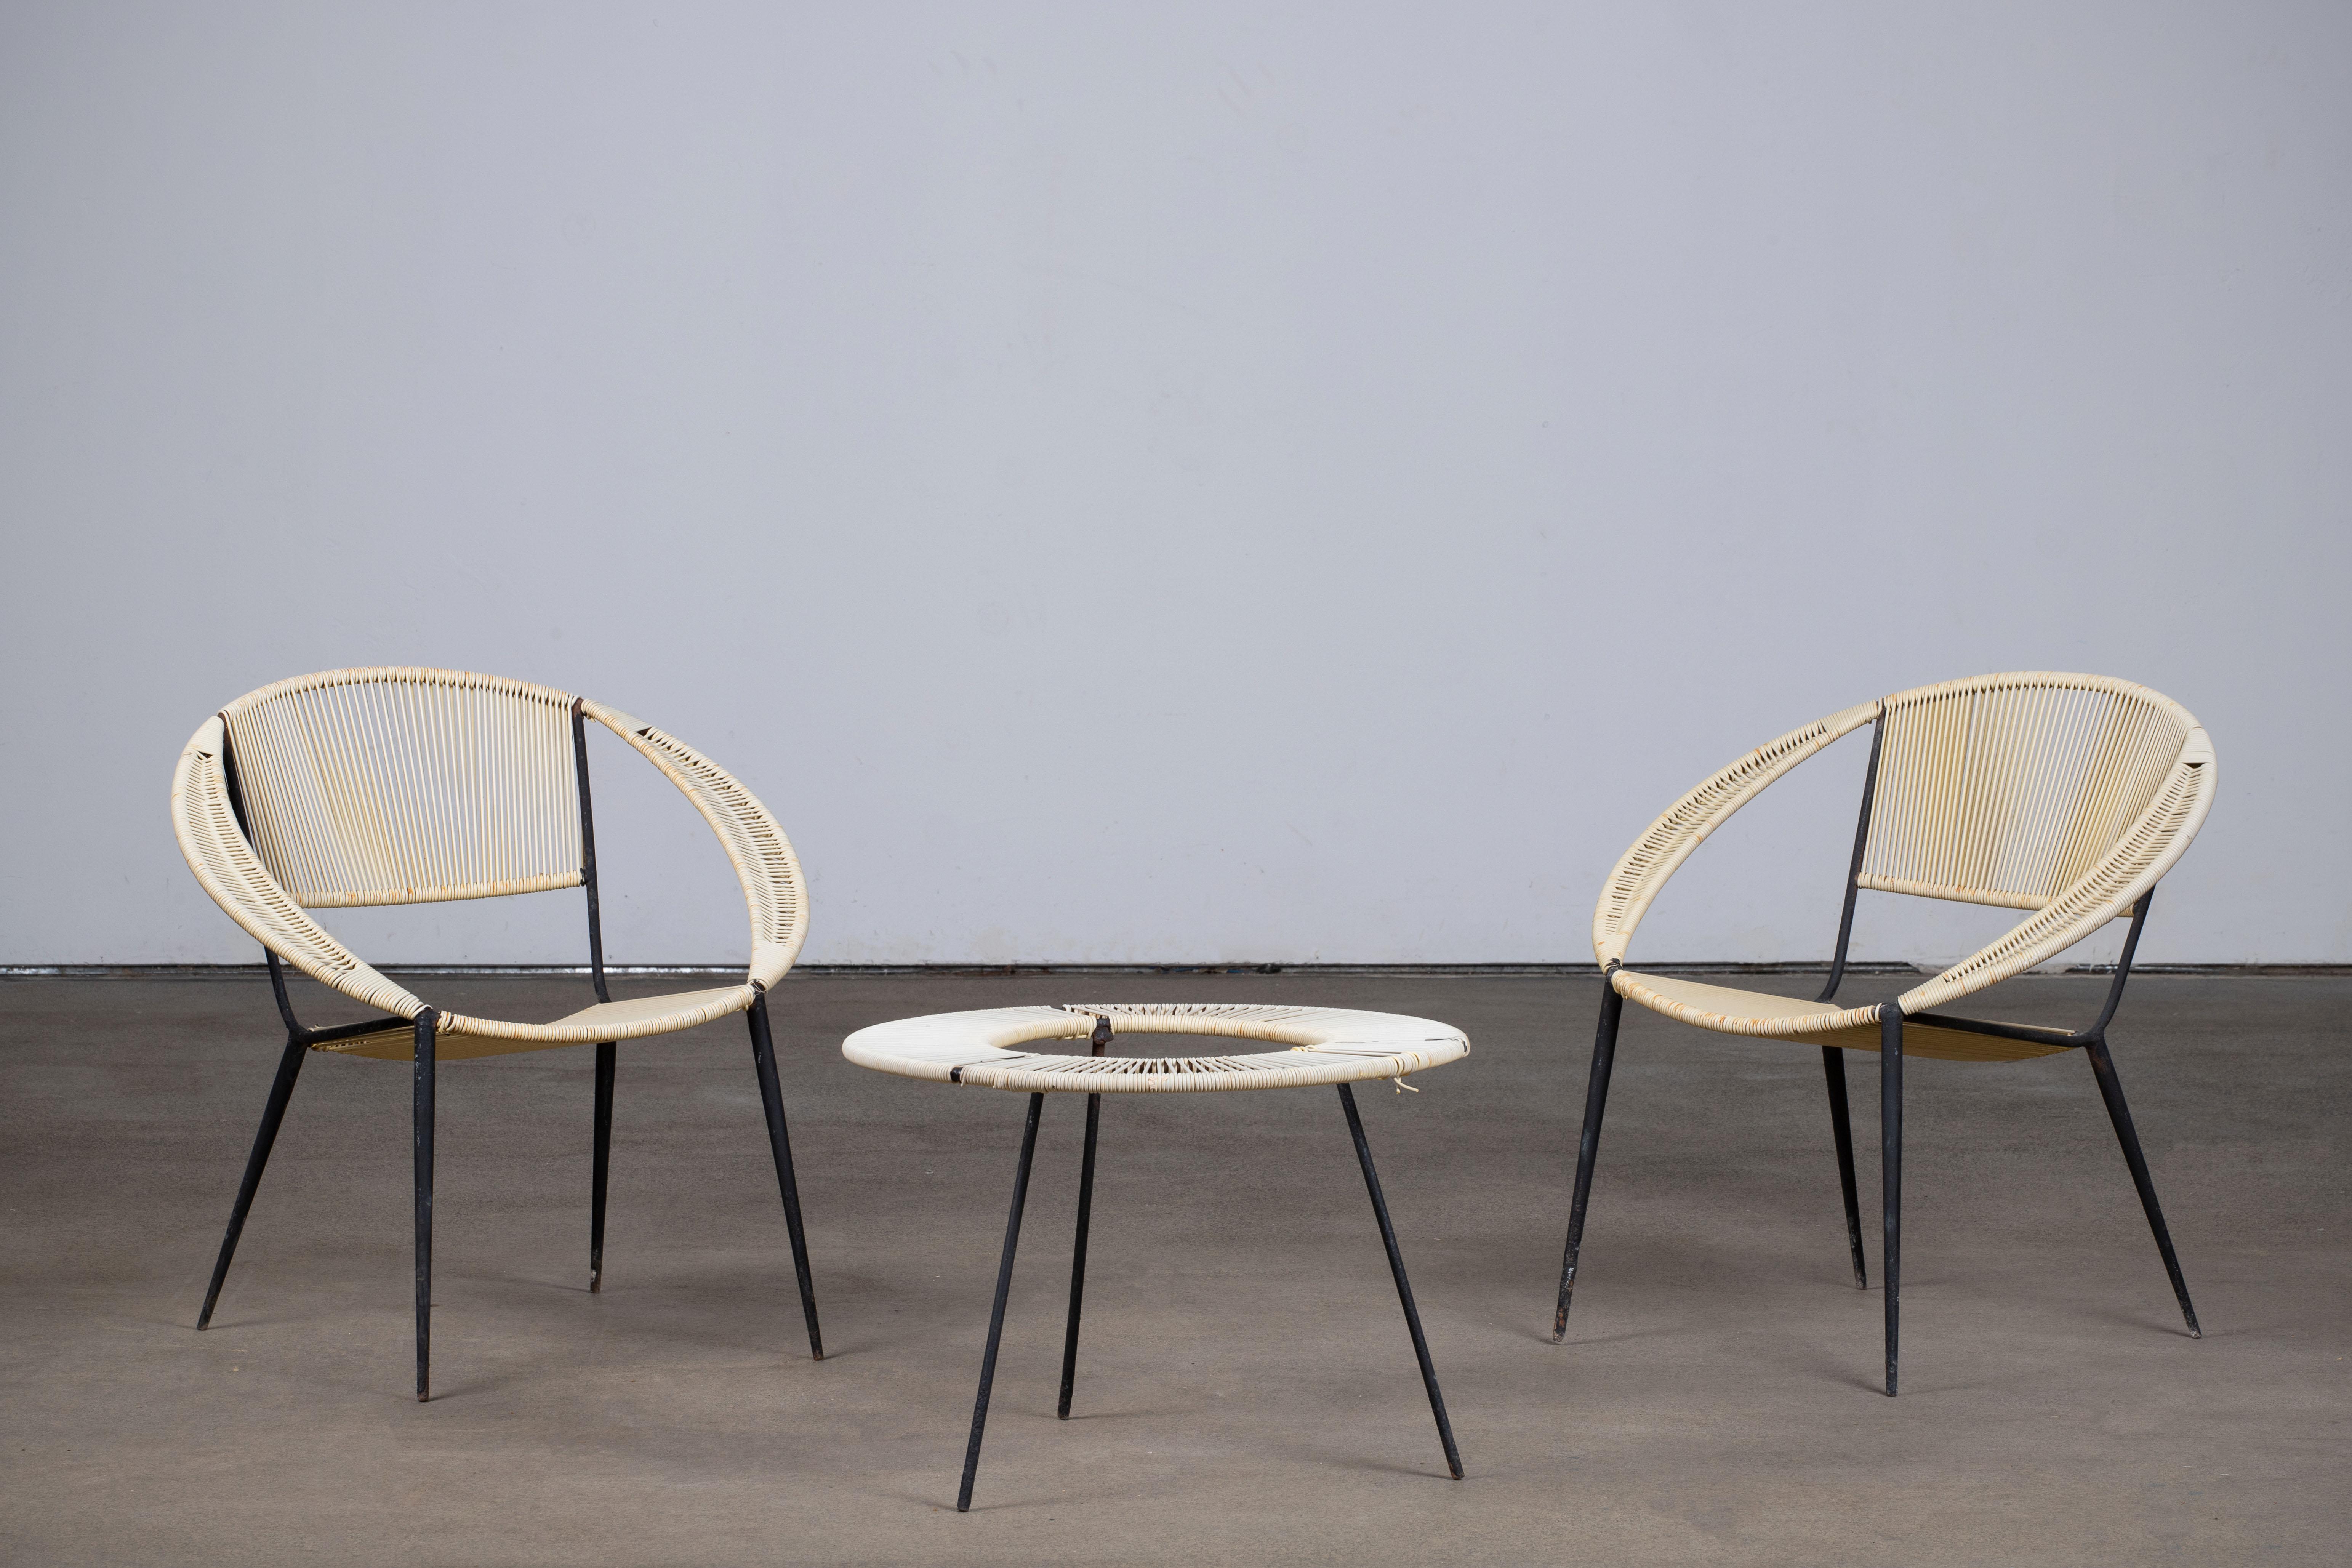 Ensemble de fauteuils de salon de jardin dans le style de Gastone Rinaldi, Italie, années 1950.
Composé de deux chaises longues et d'une table basse.

Présente des signes d'utilisation, des marques de rouille sur les structures. Restauration